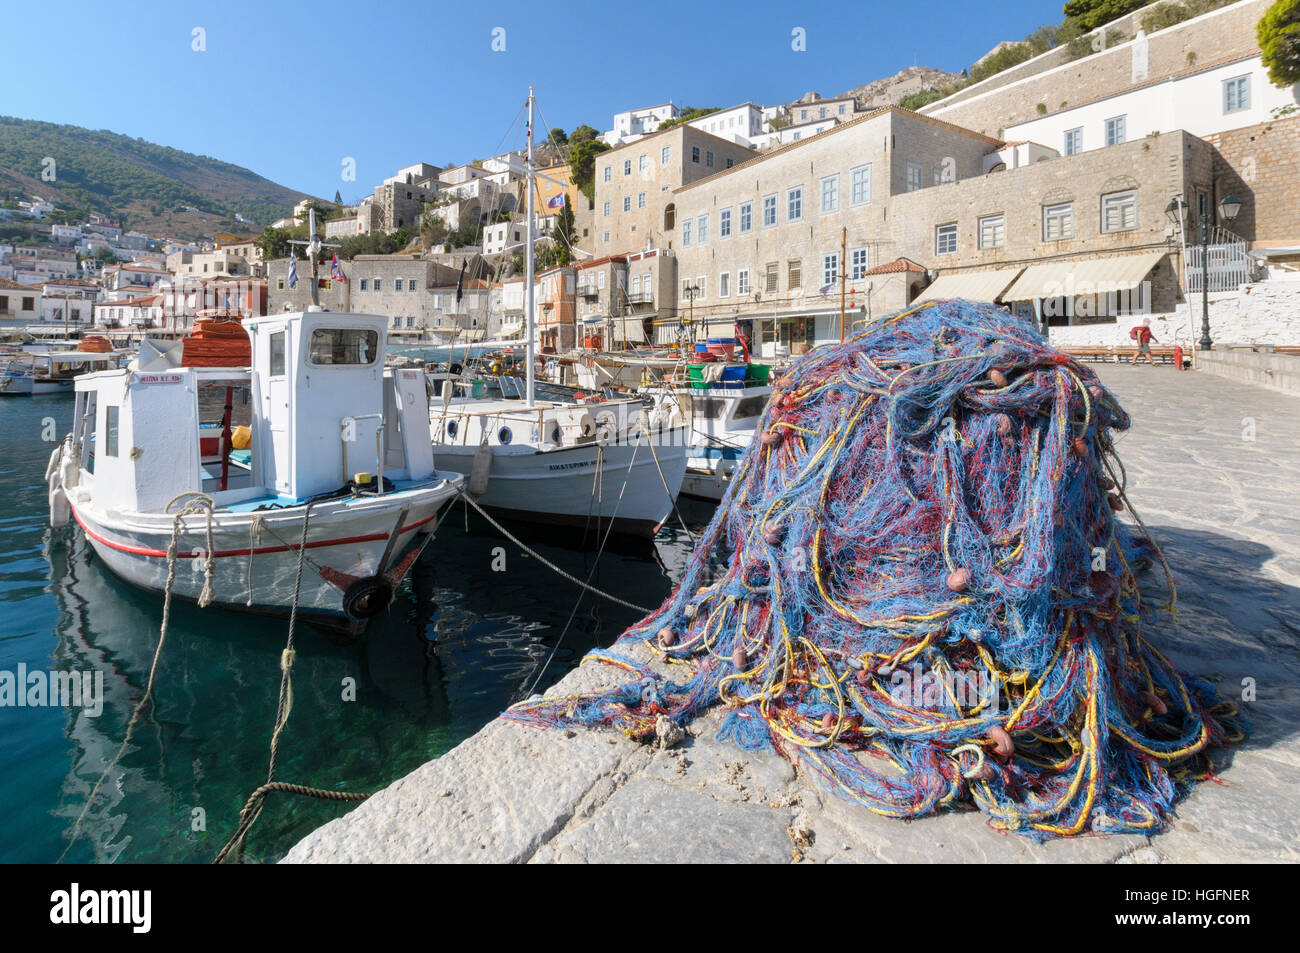 Les bateaux de pêche amarrés dans le port d'Hydra, Hydra, îles saroniques, Grèce Banque D'Images